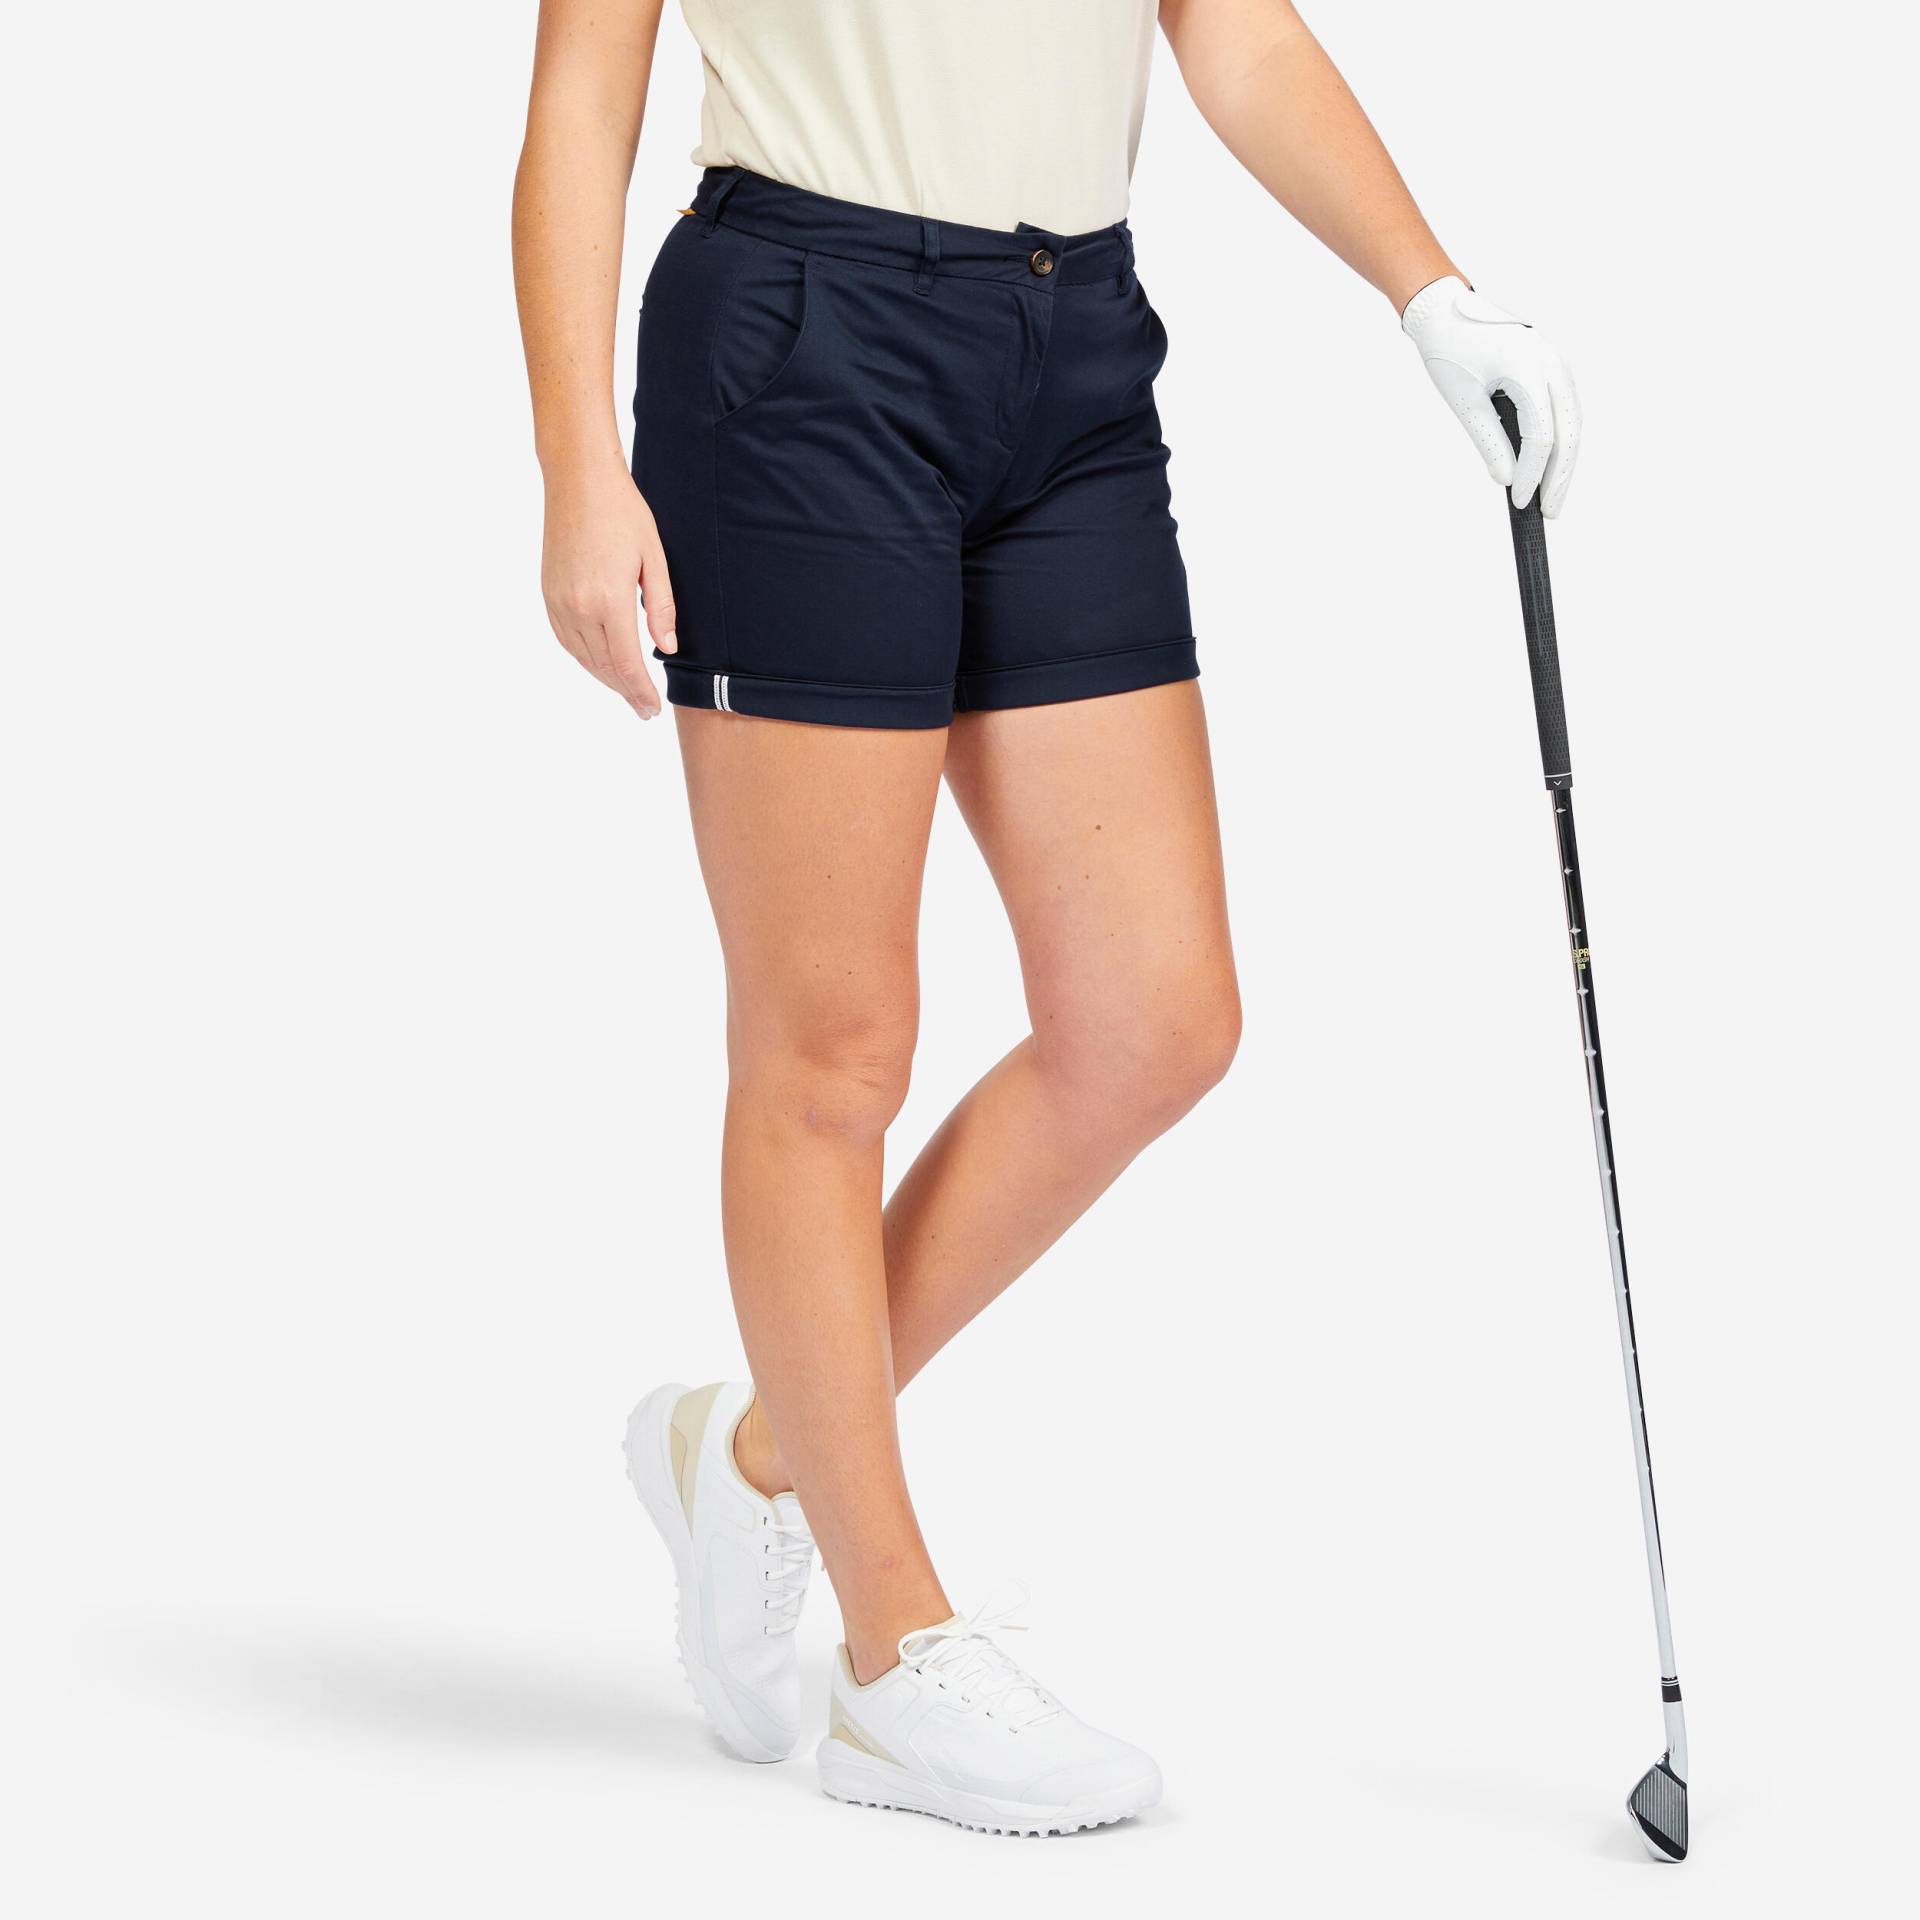 Damen Golf Shorts - MW500 marineblau von INESIS